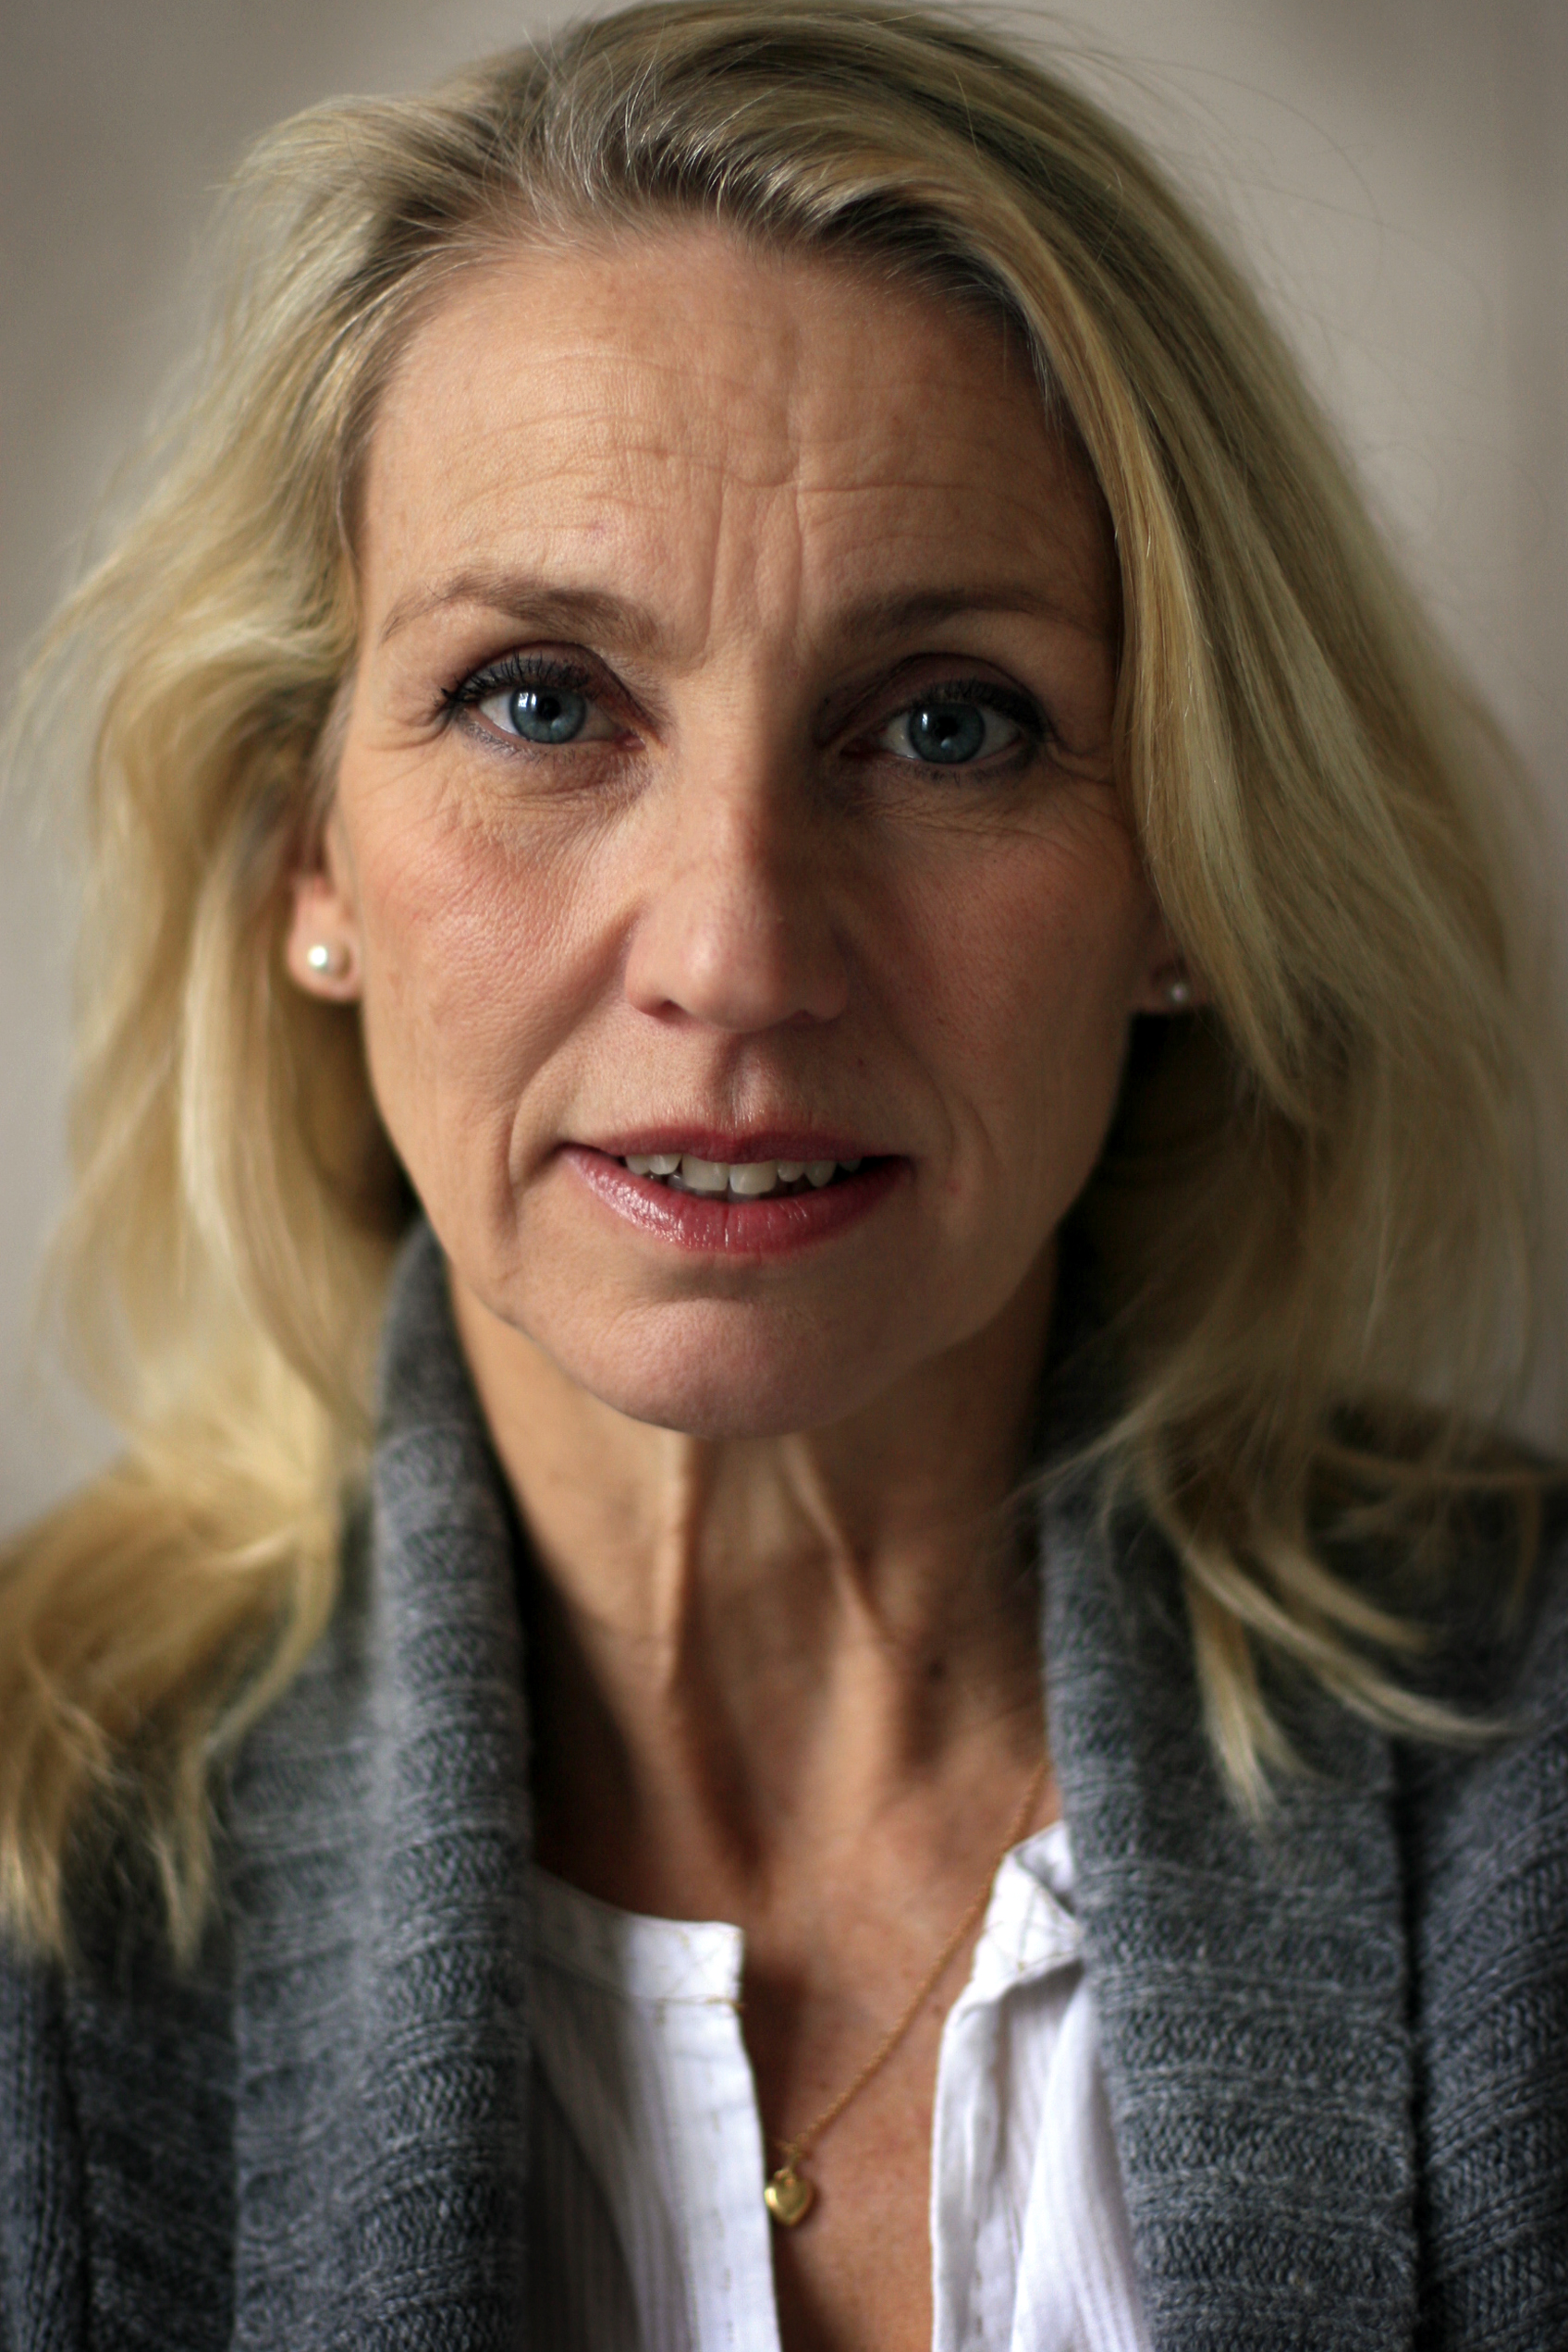 Susanne Barklund